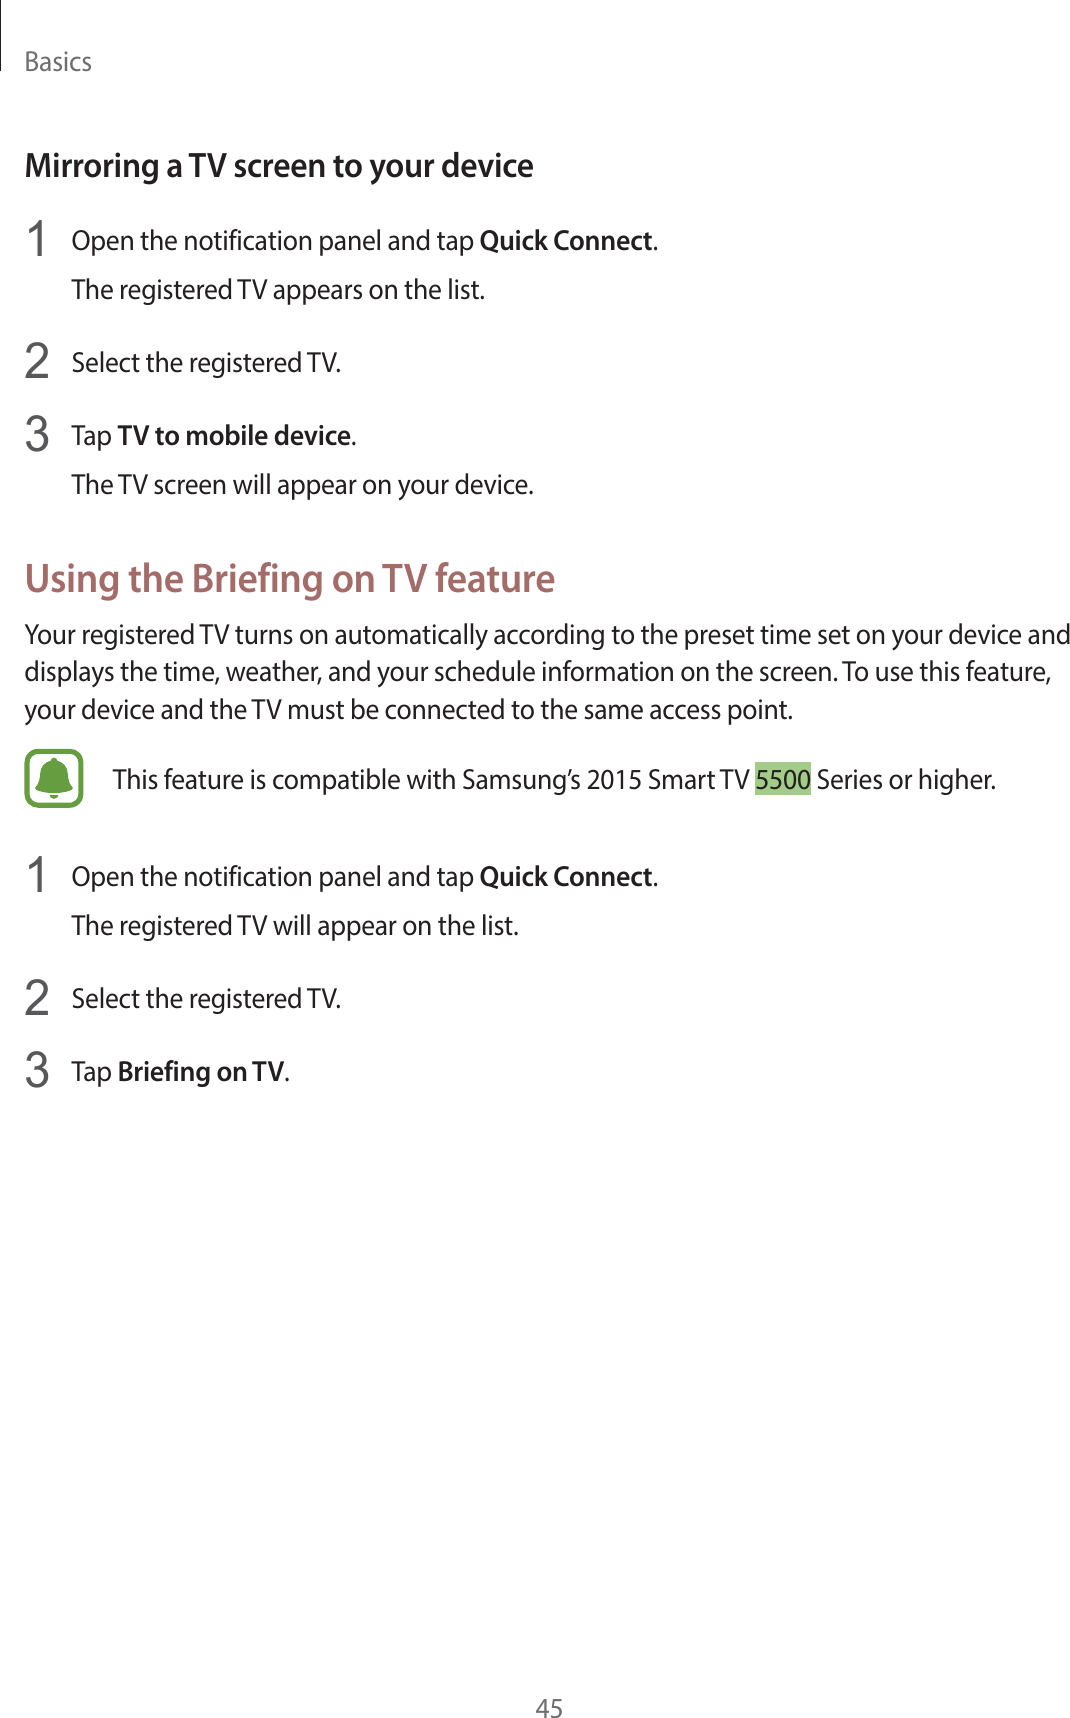 #BTJDTMirroring a TV screen to your device 0QFOUIFOPUJGJDBUJPOQBOFMBOEUBQQuick Connect5IFSFHJTUFSFE57BQQFBSTPOUIFMJTU 4FMFDUUIFSFHJTUFSFE57 5BQTV to mobile device5IF57TDSFFOXJMMBQQFBSPOZPVSEFWJDFUsing the Briefing on TV feature:PVSSFHJTUFSFE57UVSOTPOBVUPNBUJDBMMZBDDPSEJOHUPUIFQSFTFUUJNFTFUPOZPVSEFWJDFBOEEJTQMBZTUIFUJNFXFBUIFSBOEZPVSTDIFEVMFJOGPSNBUJPOPOUIFTDSFFO5PVTFUIJTGFBUVSFZPVSEFWJDFBOEUIF57NVTUCFDPOOFDUFEUPUIFTBNFBDDFTTQPJOU5IJTGFBUVSFJTDPNQBUJCMFXJUI4BNTVOHT4NBSU574FSJFTPSIJHIFS 0QFOUIFOPUJGJDBUJPOQBOFMBOEUBQQuick Connect5IFSFHJTUFSFE57XJMMBQQFBSPOUIFMJTU 4FMFDUUIFSFHJTUFSFE57 5BQBriefing on TV